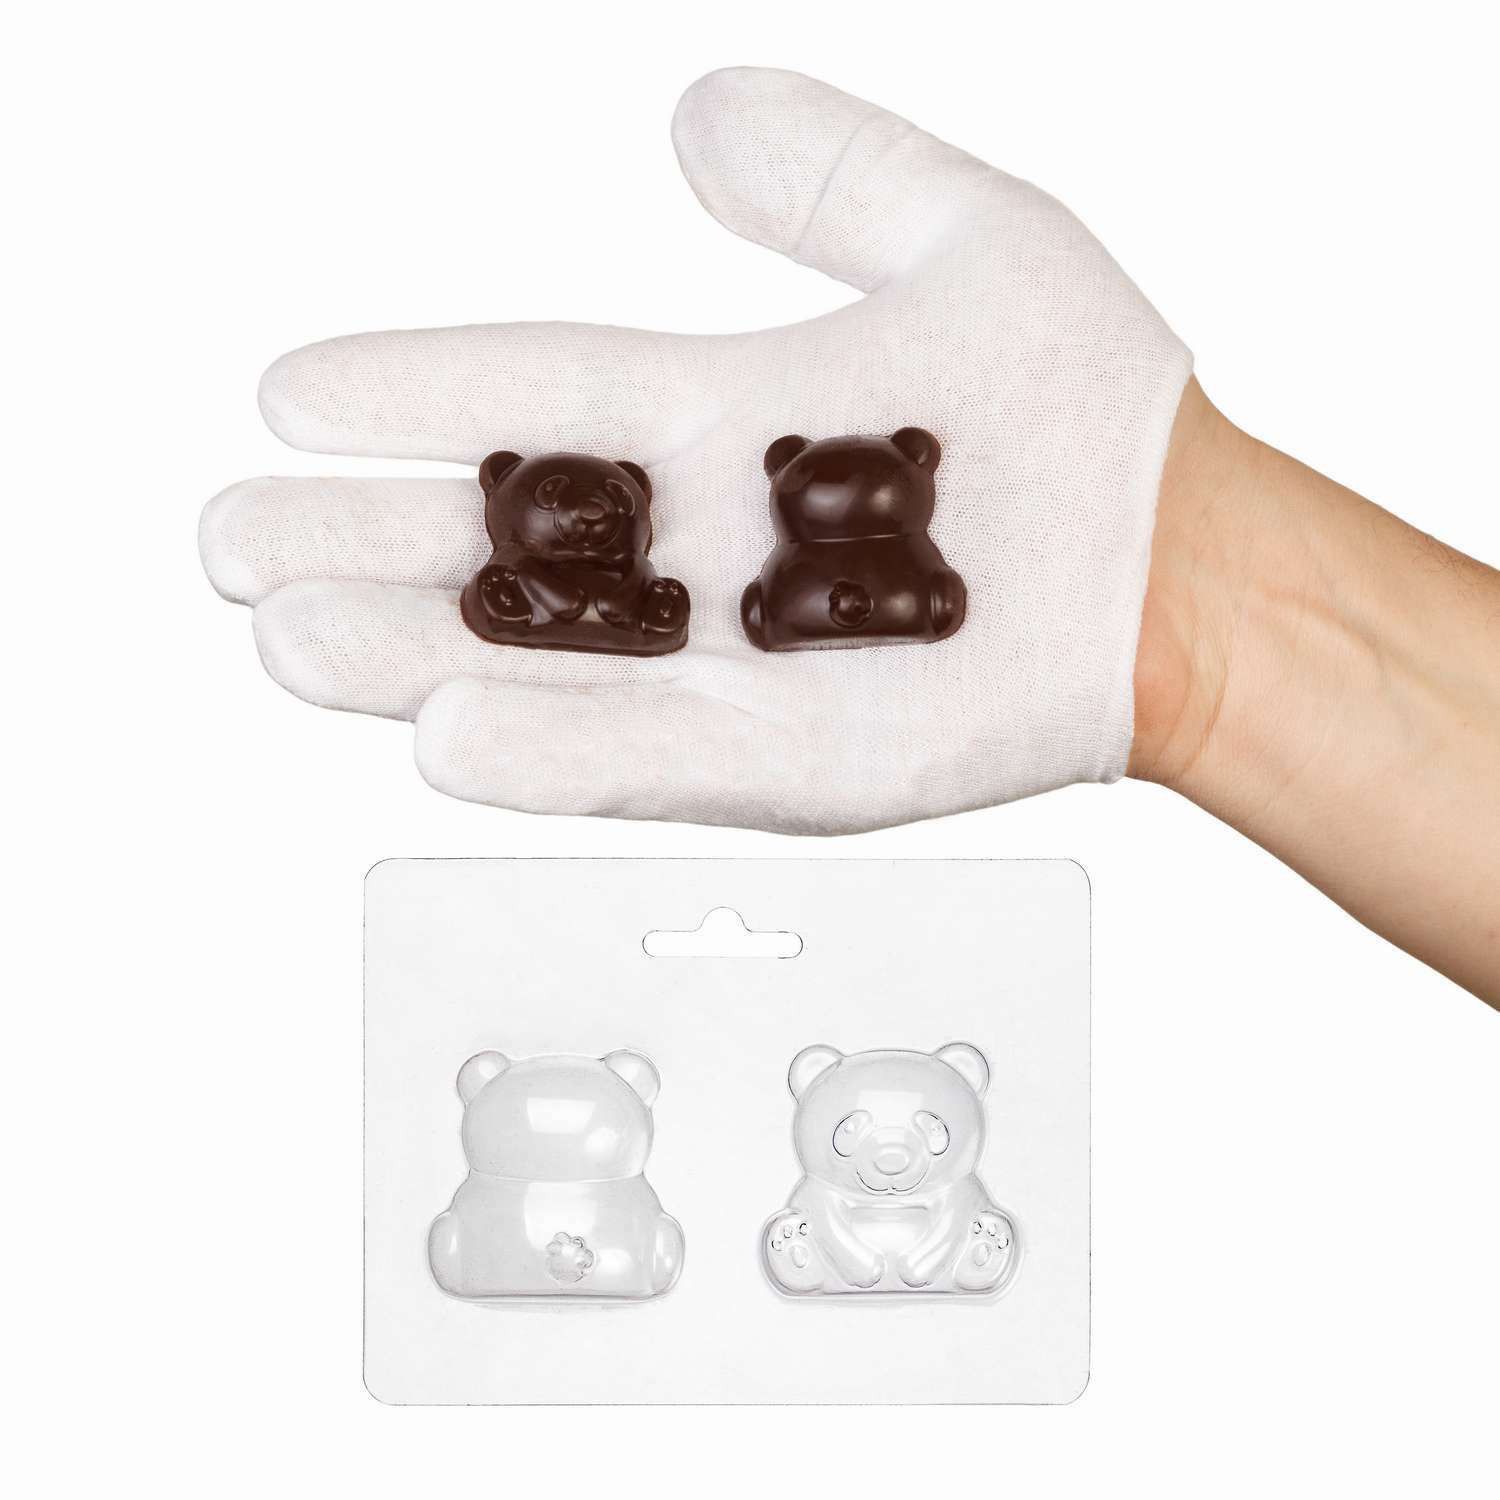 ⋗ Пластиковая форма для шоколада Панда купить в Украине ➛ CakeShop.com.ua, фото